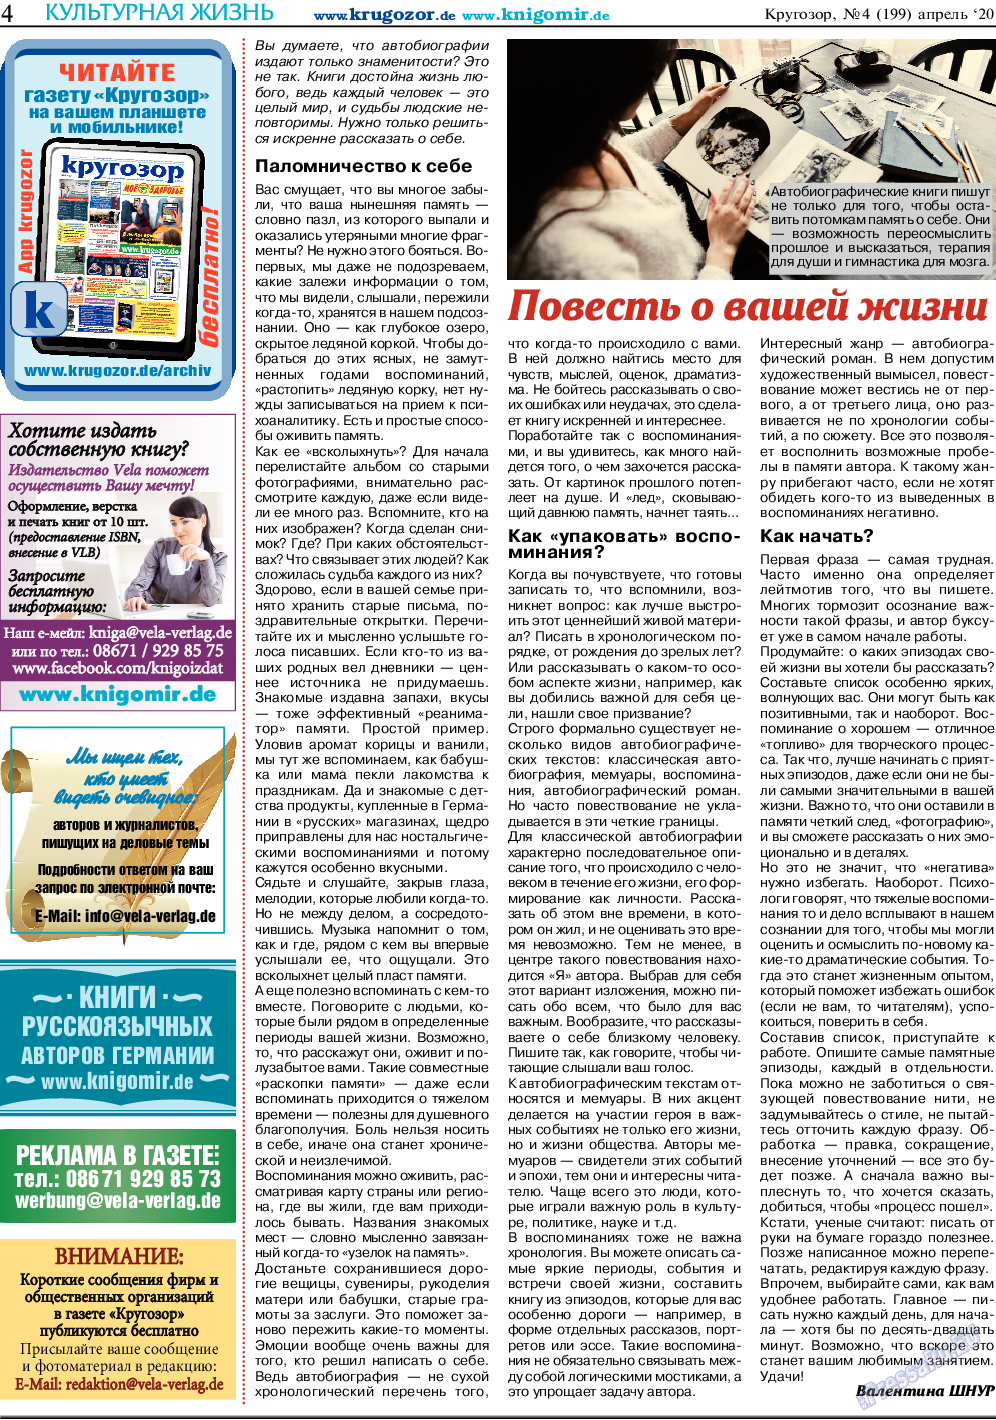 Кругозор, газета. 2020 №4 стр.4